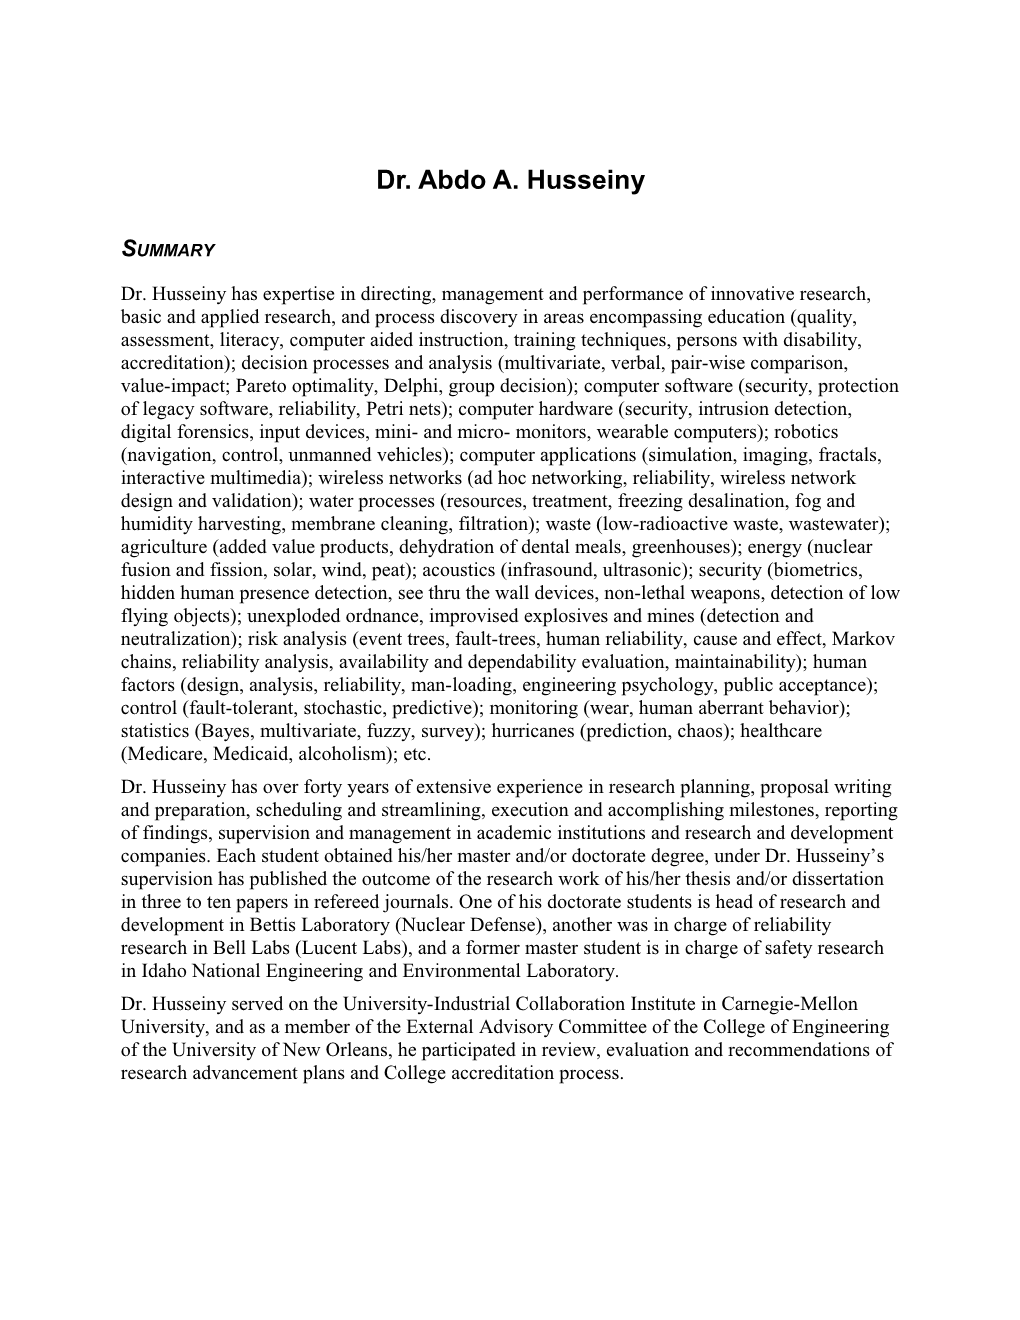 Dr. Abdo A. Husseiny; CV (7)